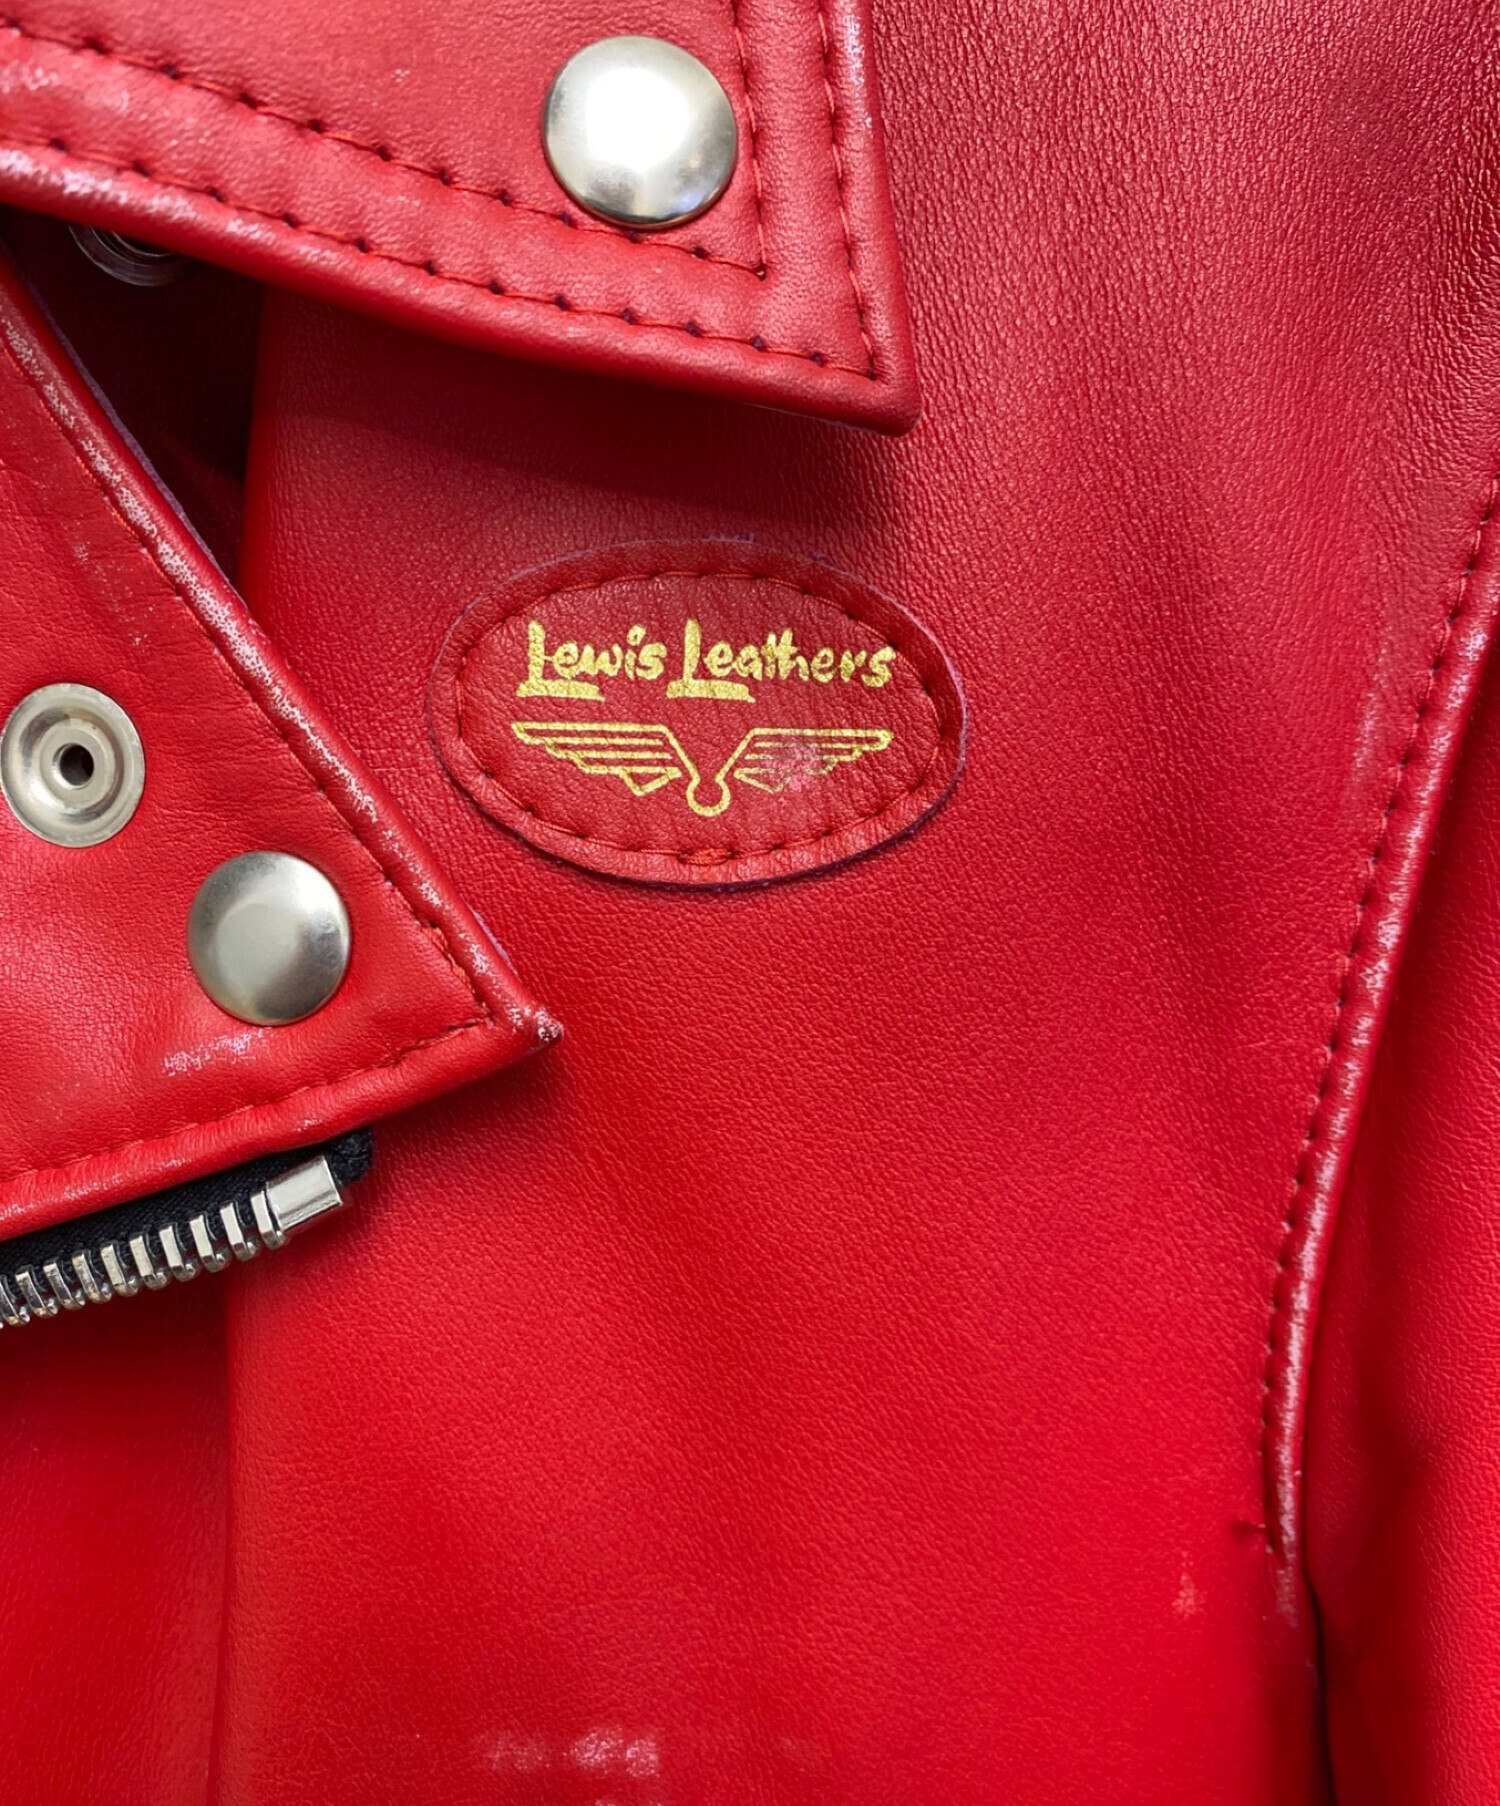 COMME des GARCONS (コムデギャルソン) Lewis Leathers (ルイスレザース) ライトニング/ダブルライダースジャケット  レッド サイズ:36